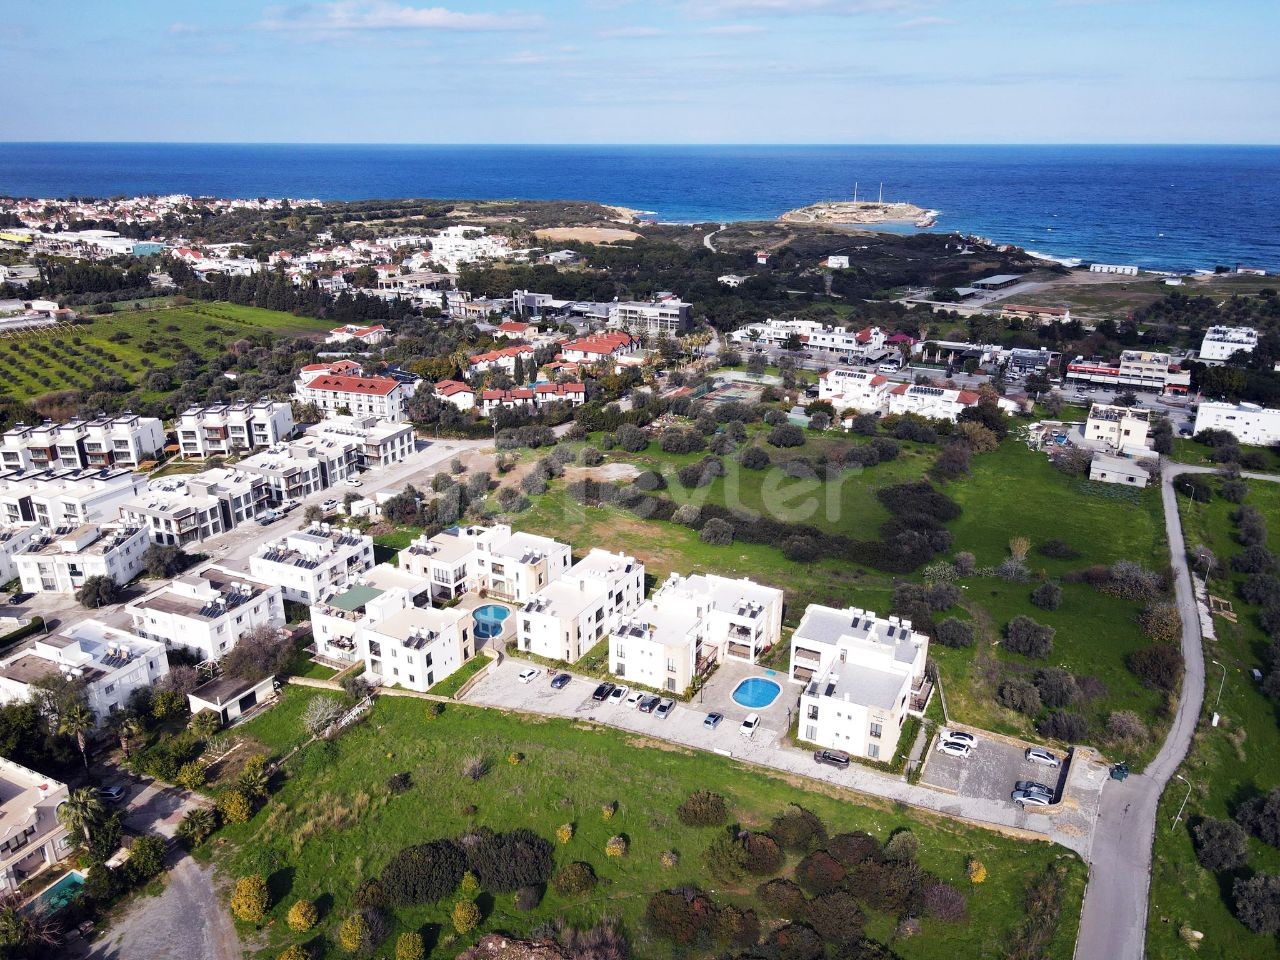 3+1 Wohnung zum Verkauf in der Region Kyrenia Zeytinlik, Zypern, mit Gemeinschaftspool, komplett möbliert, Meerblick, großer Nutzungsbereich